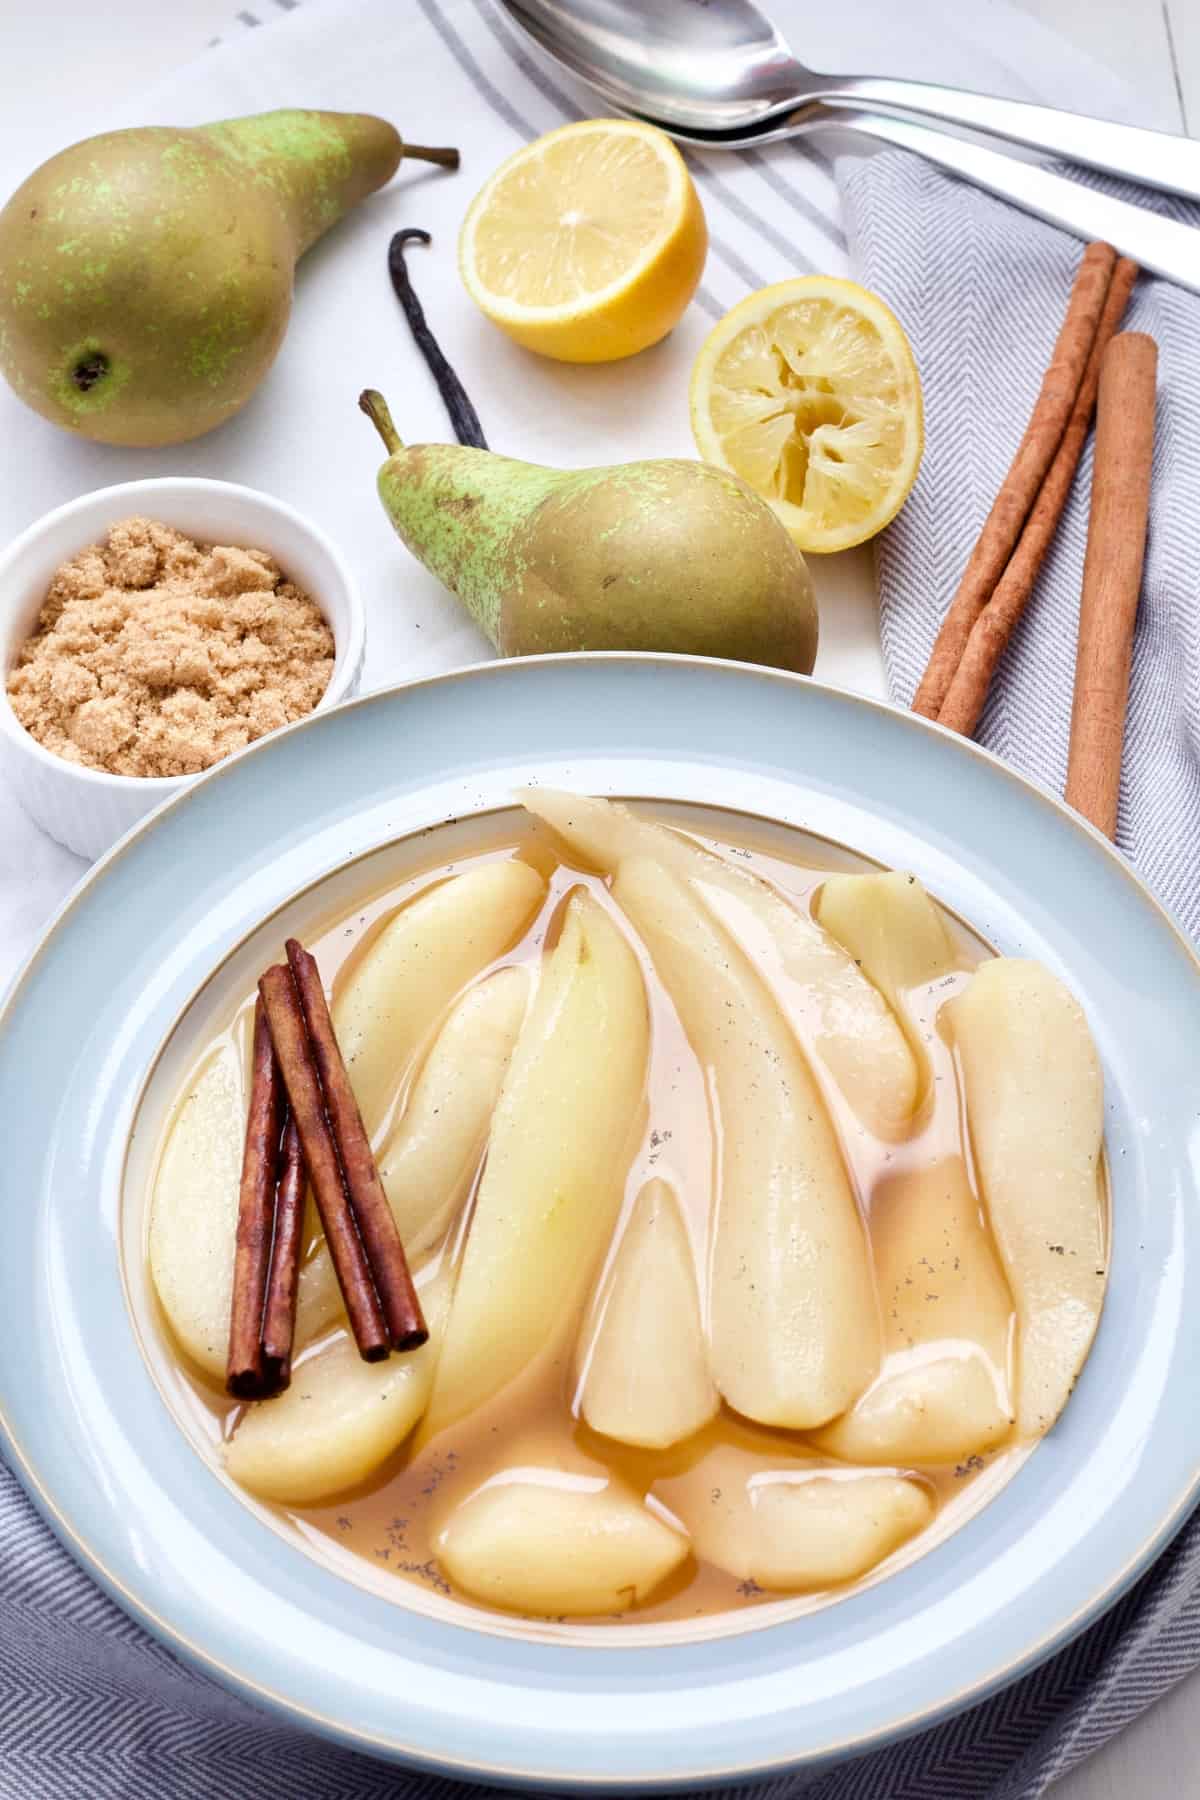 Stewed pears, cinnamon sticks, sugar in a bowl, lemons & pears.